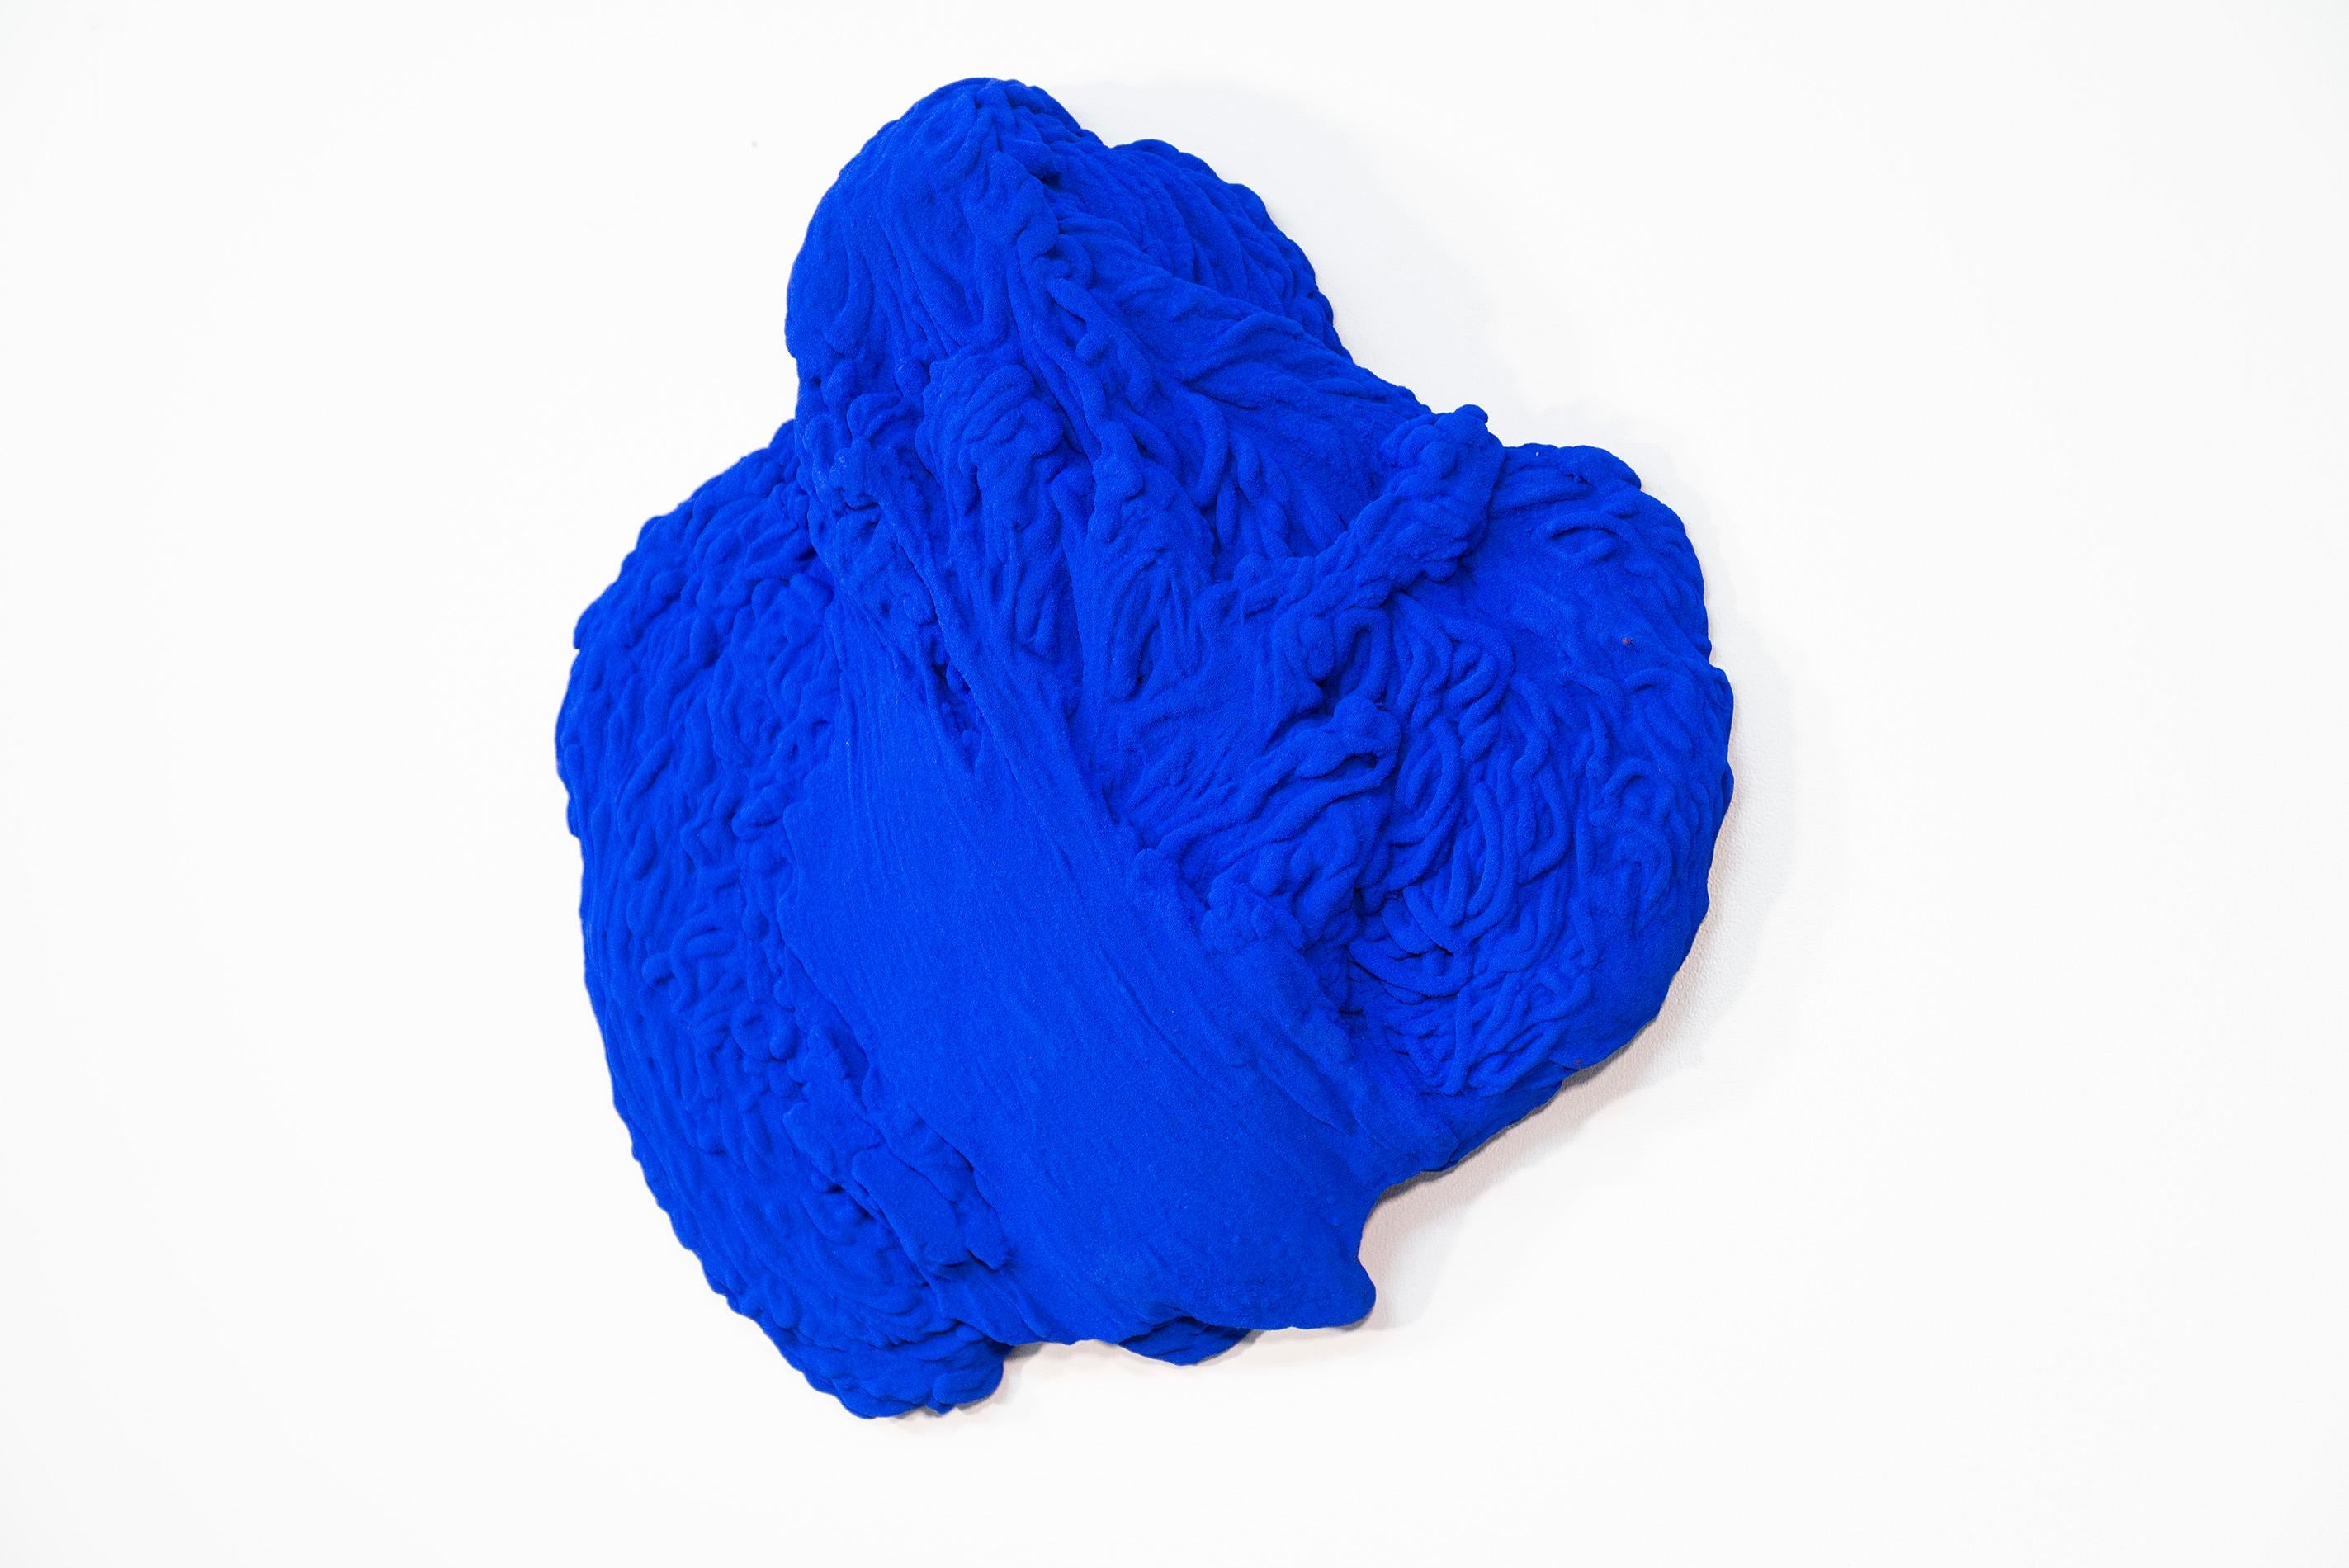 Blue Matter 2 - matte, blue, textured, abstract, mixed media wall sculpture - Sculpture by Shayne Dark